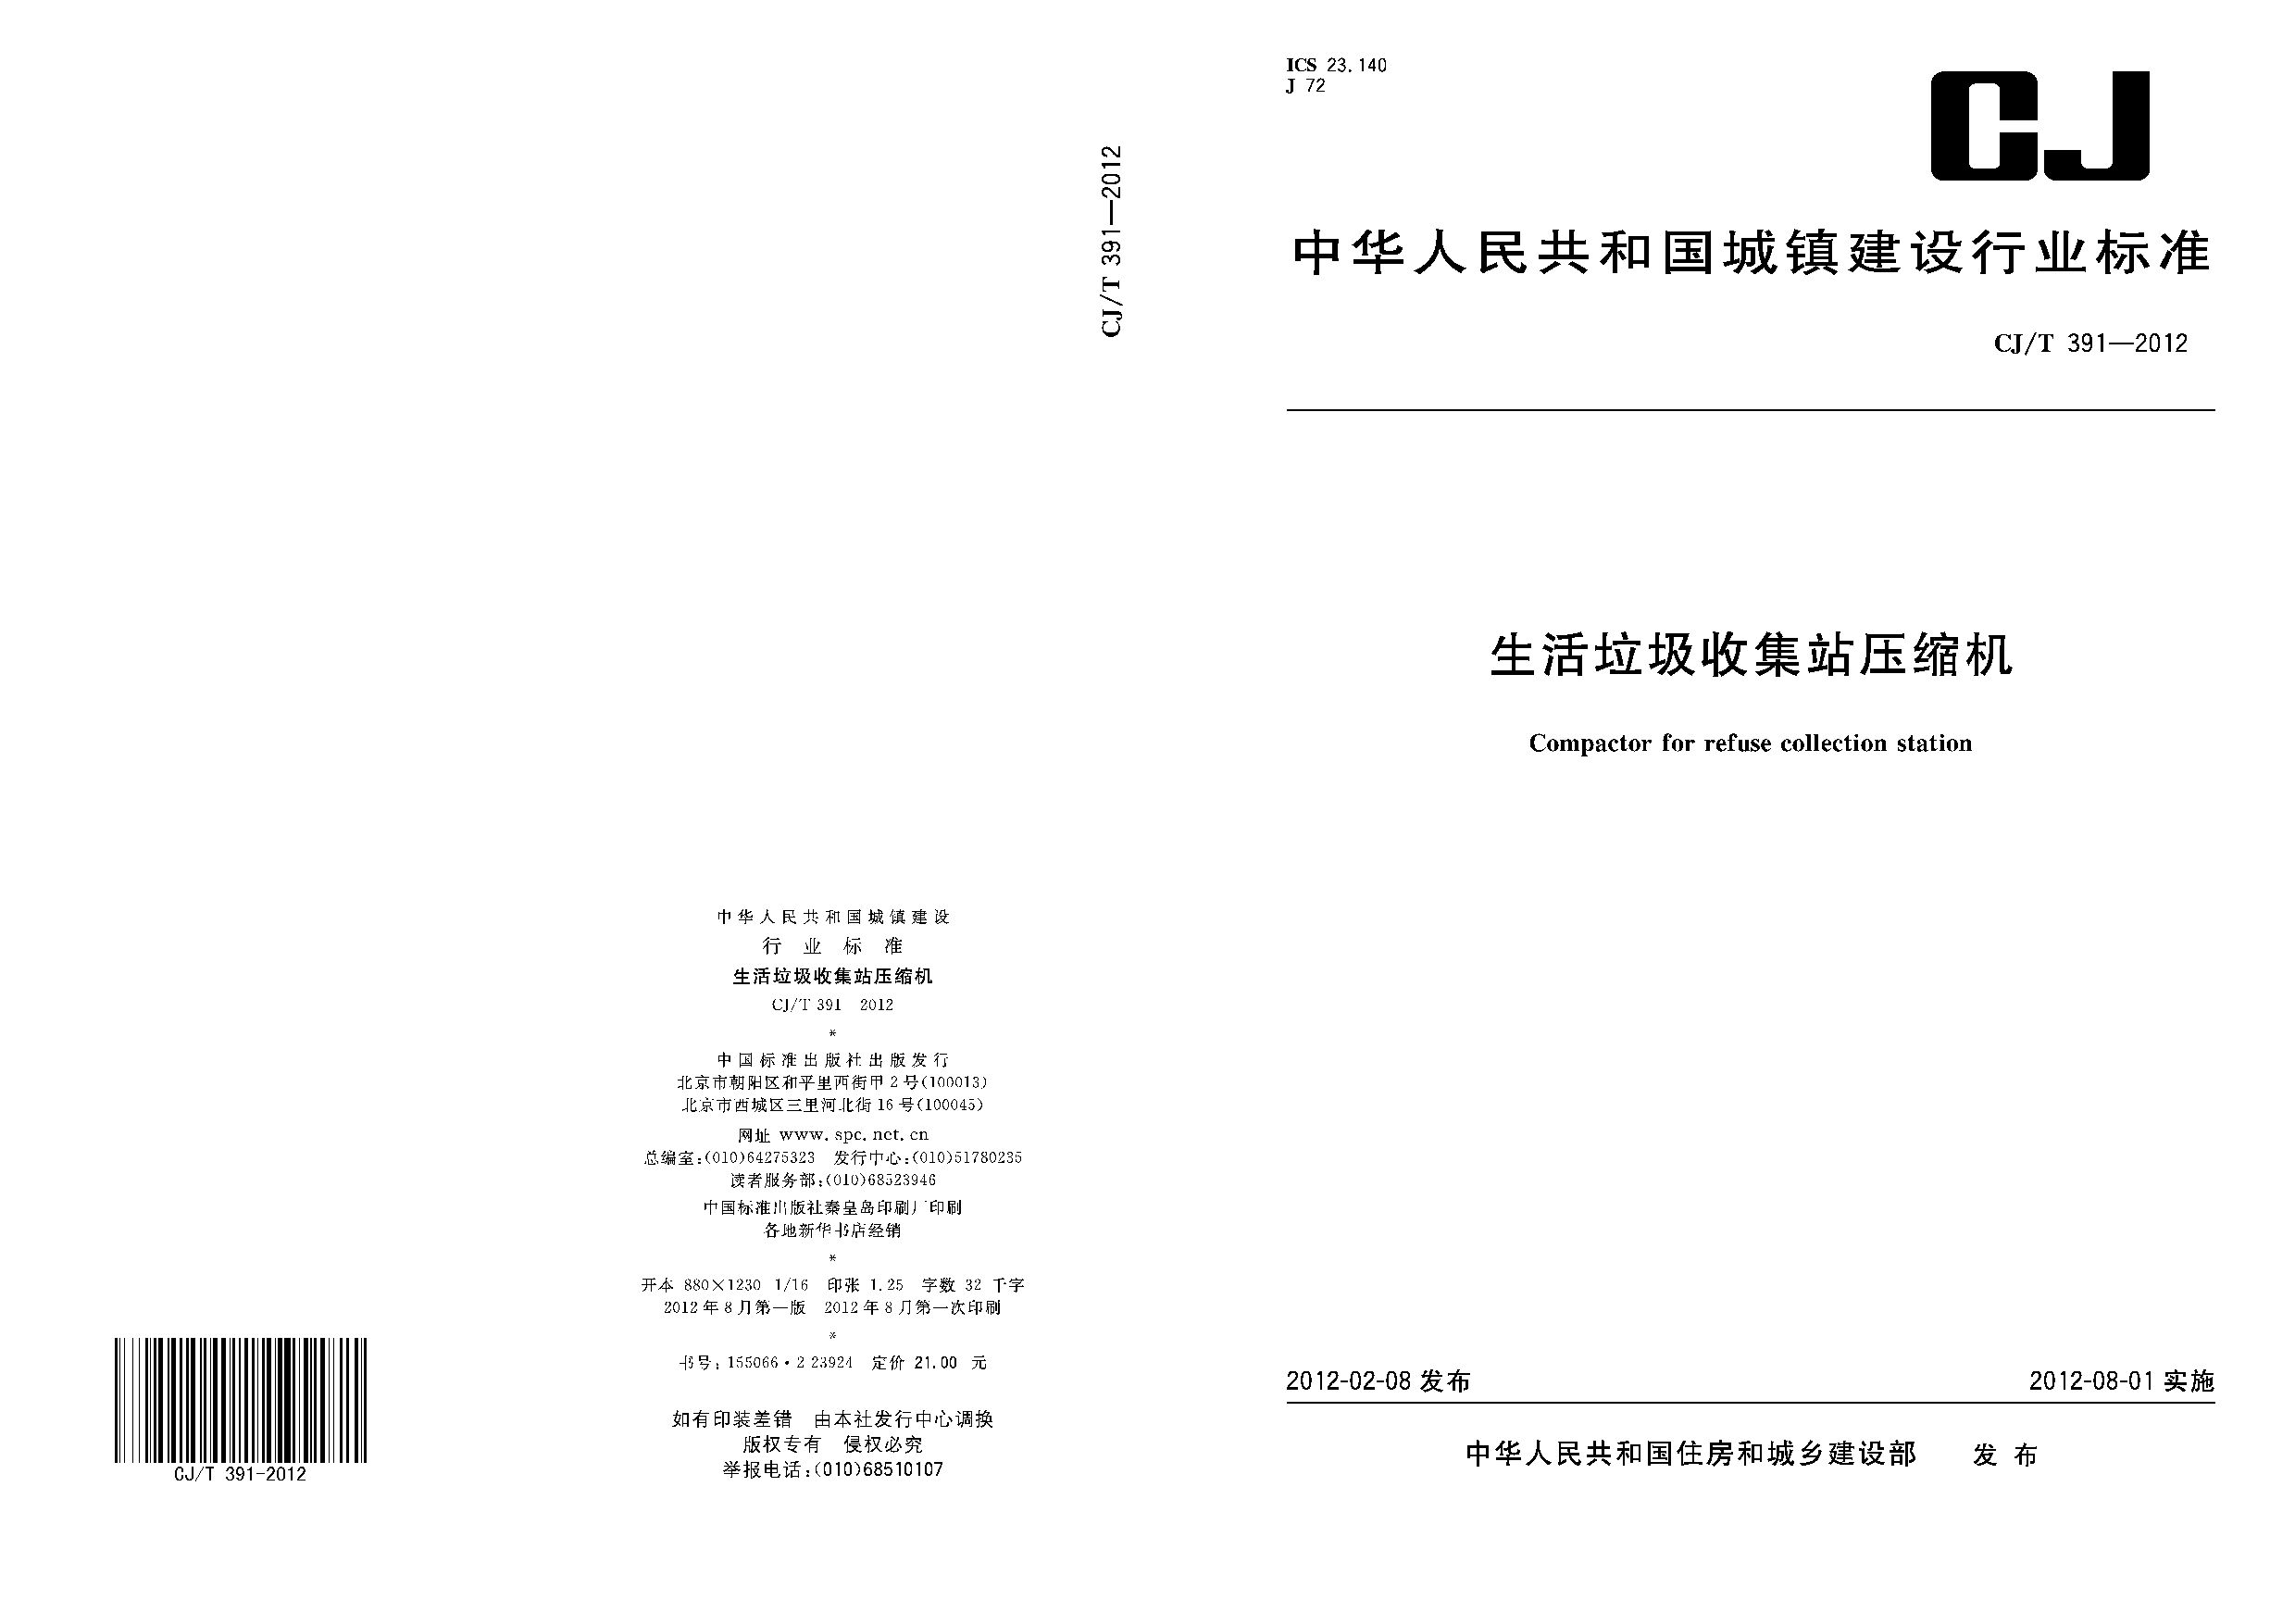 CJ/T 391-2012封面图